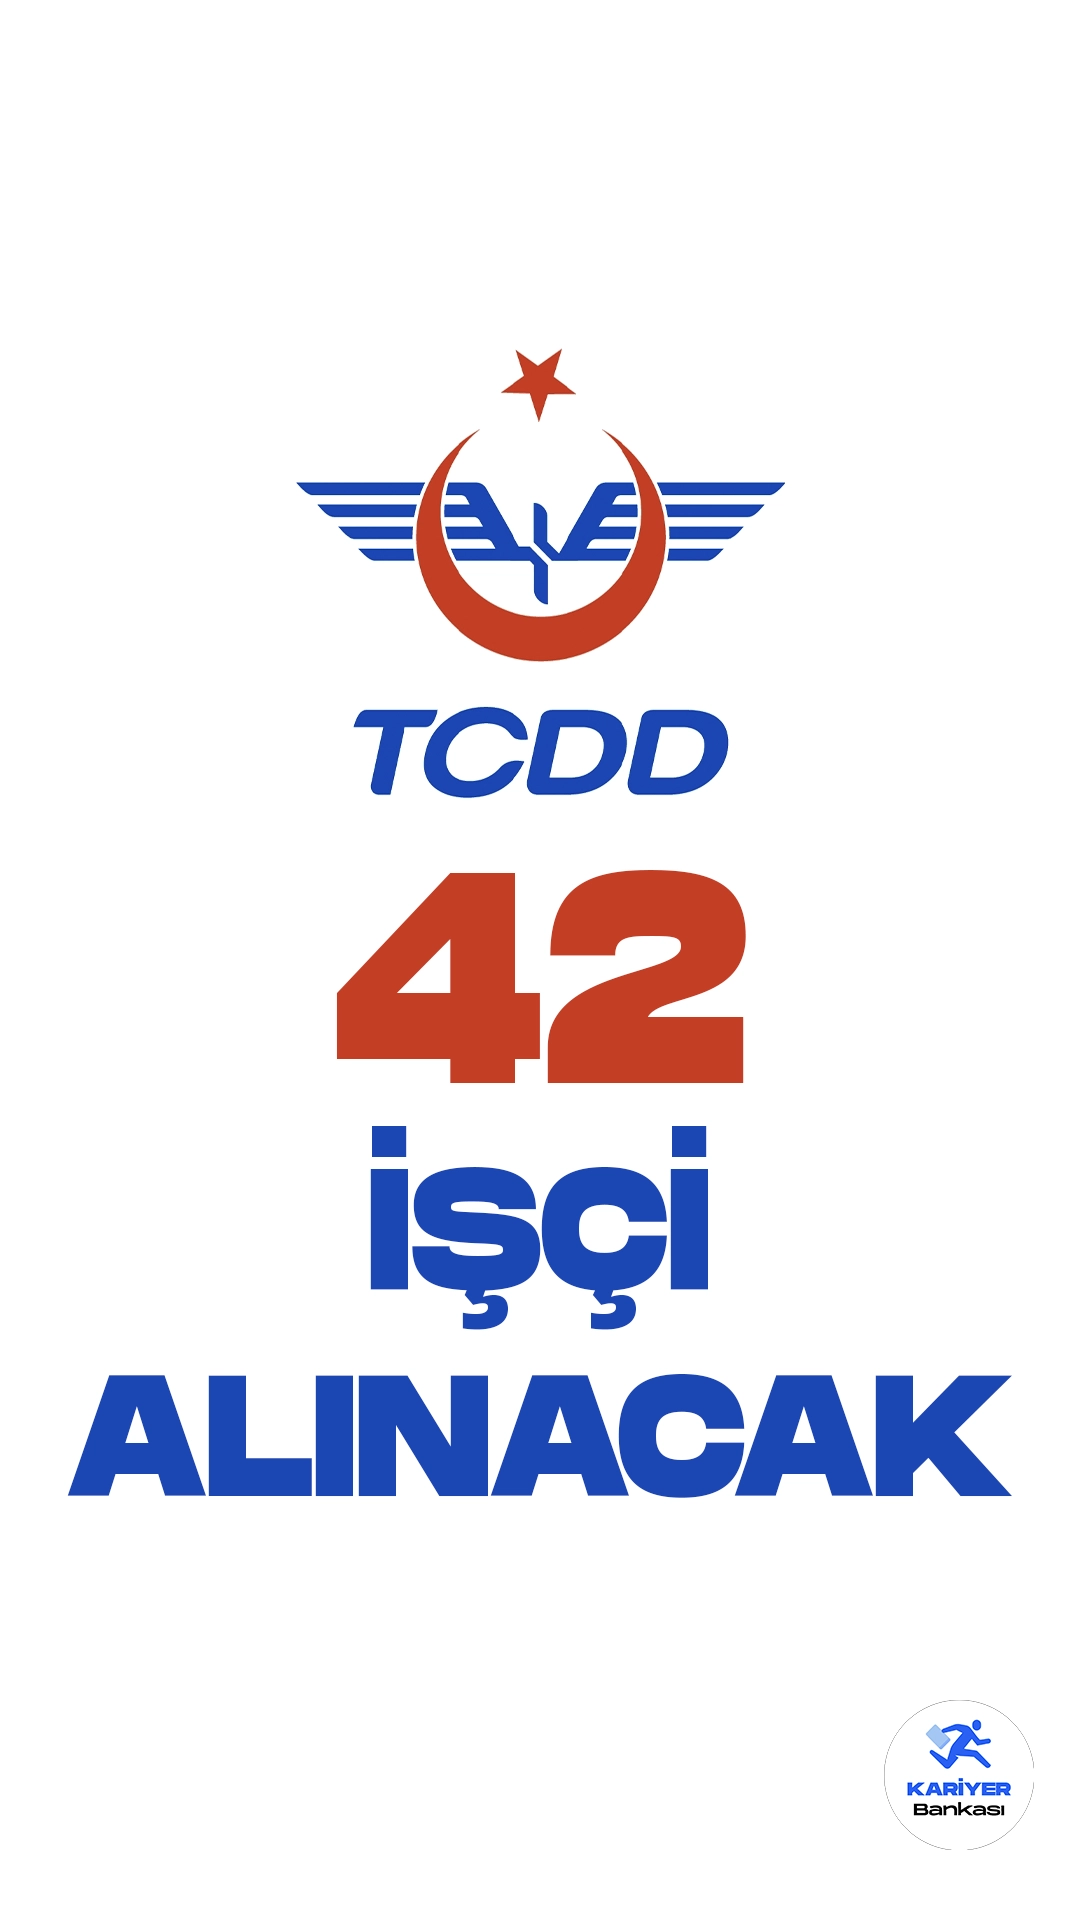 Türkiye Cumhuriyeti Devlet Demiryolları İşletmesi Genel Müdürlüğü (TCDD) işçi alımı duyurusu yayımlandı. Resmi Gazete ve Cumhurbaşkanlığı SBB'de yayımlanan duyurularda, TCDD'ye 42 operasyon işçisi alımı yapılacağı aktarıldı. Başvurular 14 Ağustos-18 Ağustos 2023 tarihleri arasında alınacak. Başvuru yapacak adayların genel şartların yanı sıra, mezuniyet şartlarını da dikkatle incelemesi gerekmektedir.